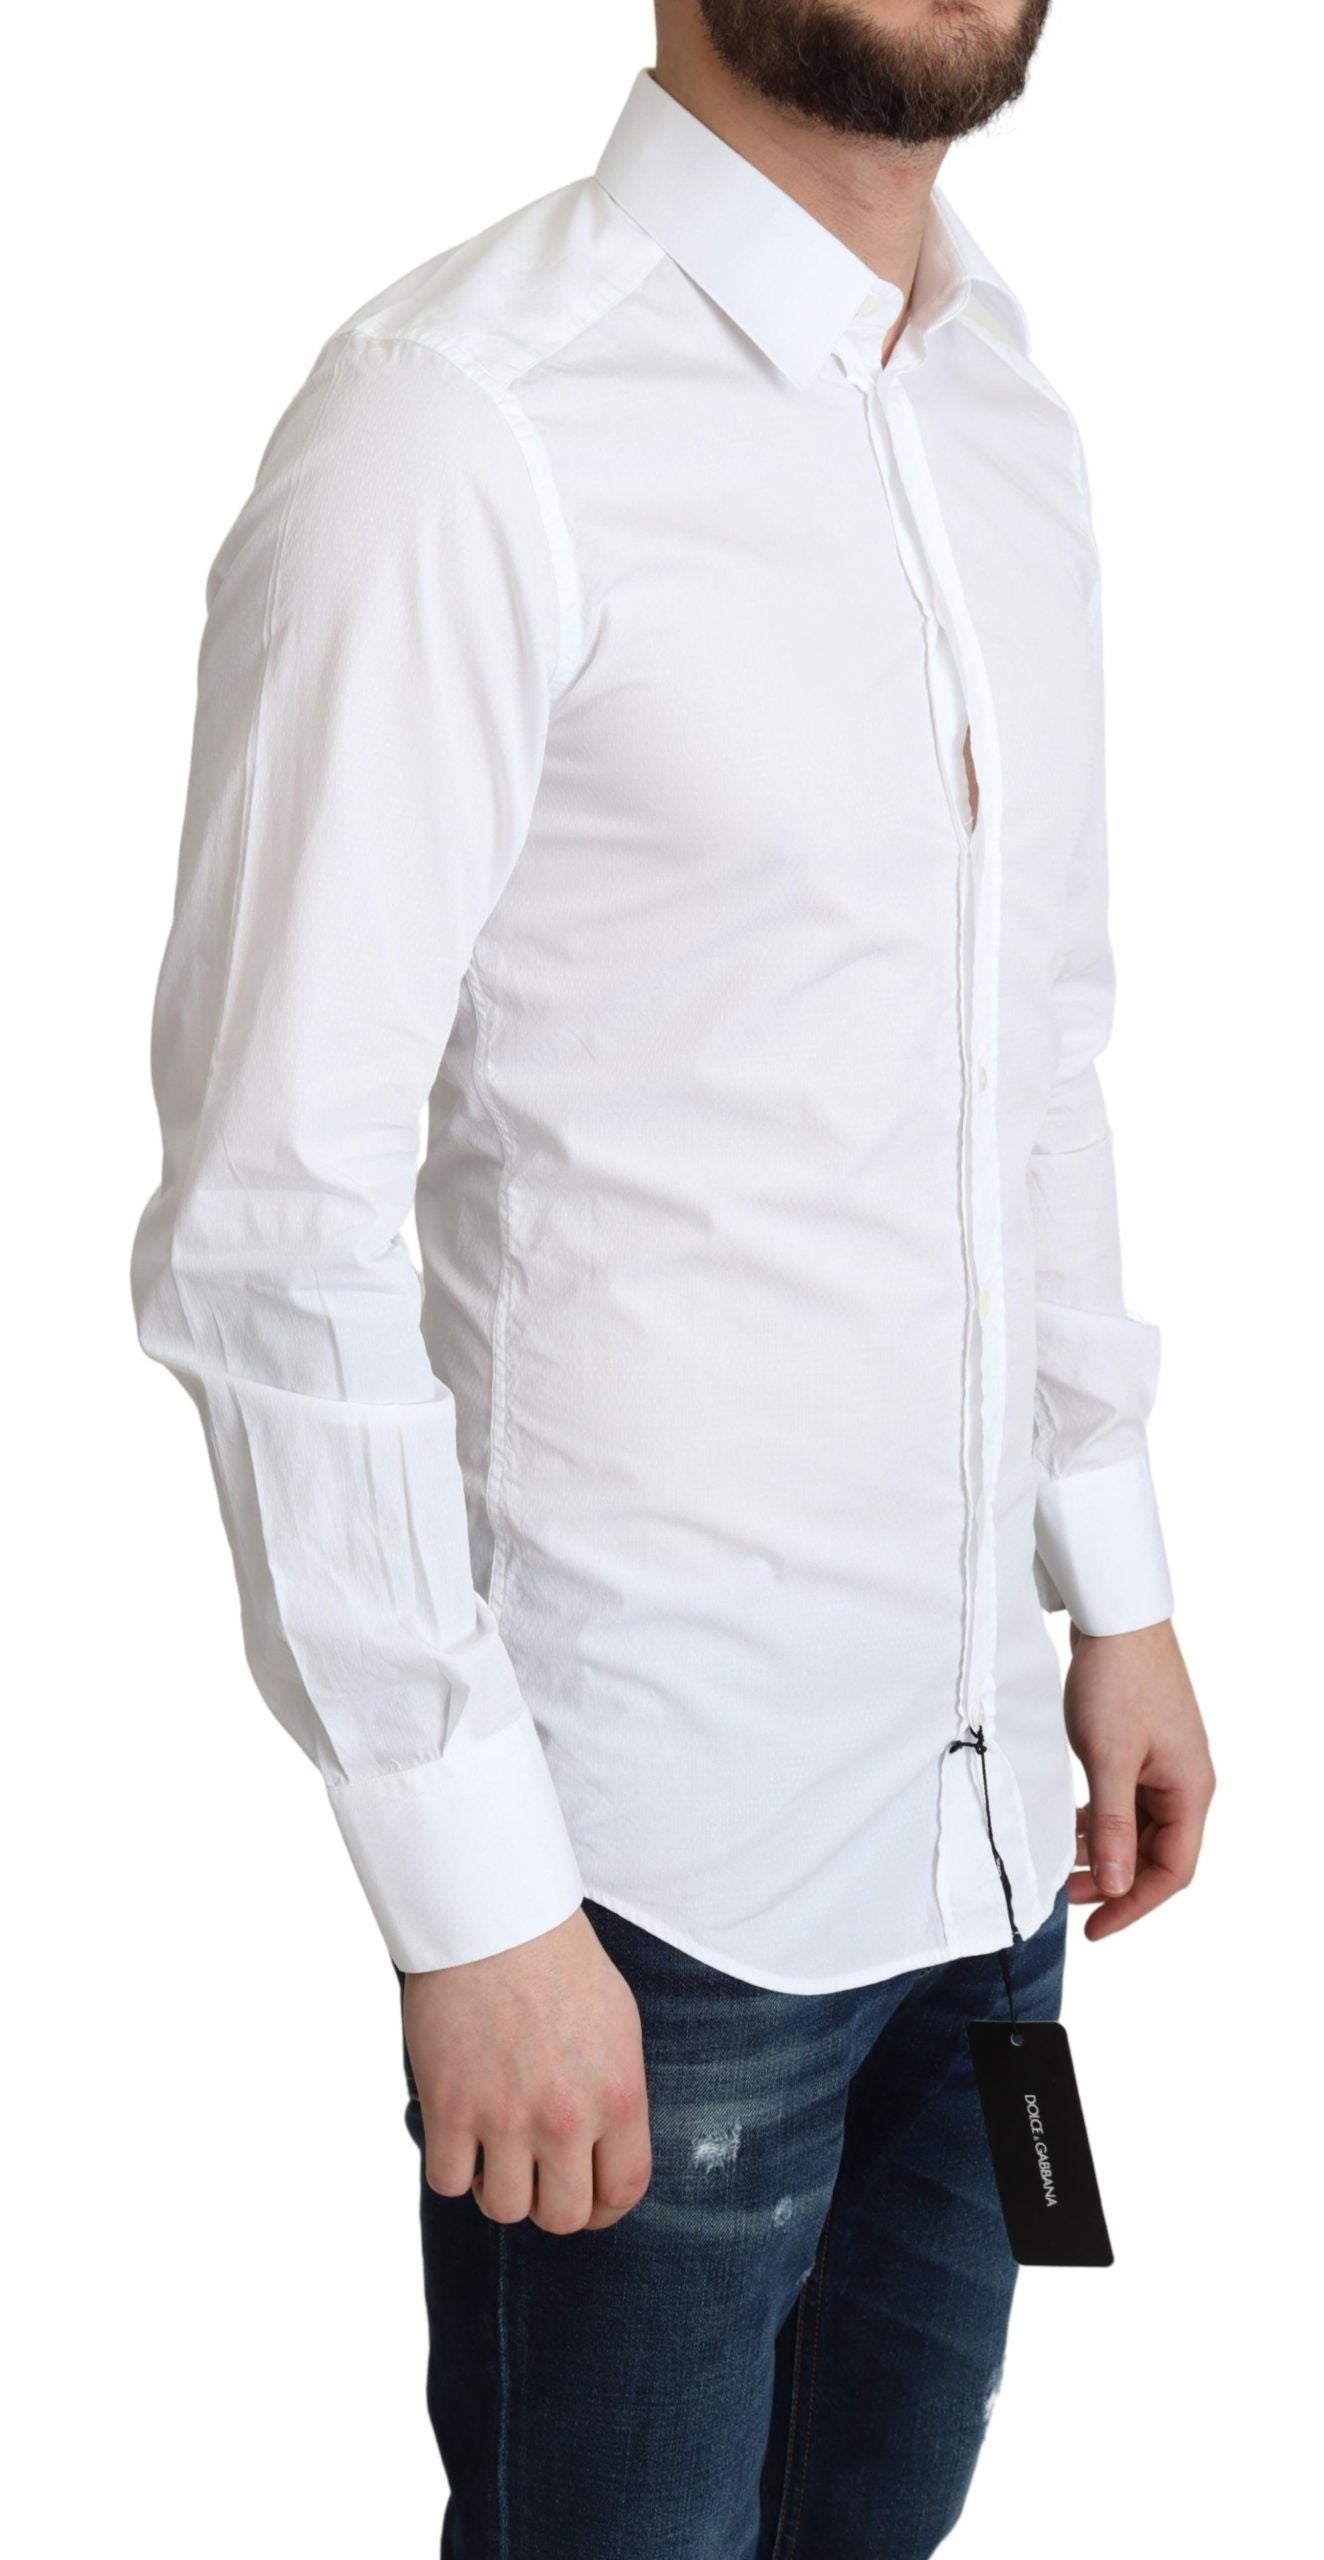 Dolce & Gabbana Elegant White Cotton Dress Shirt